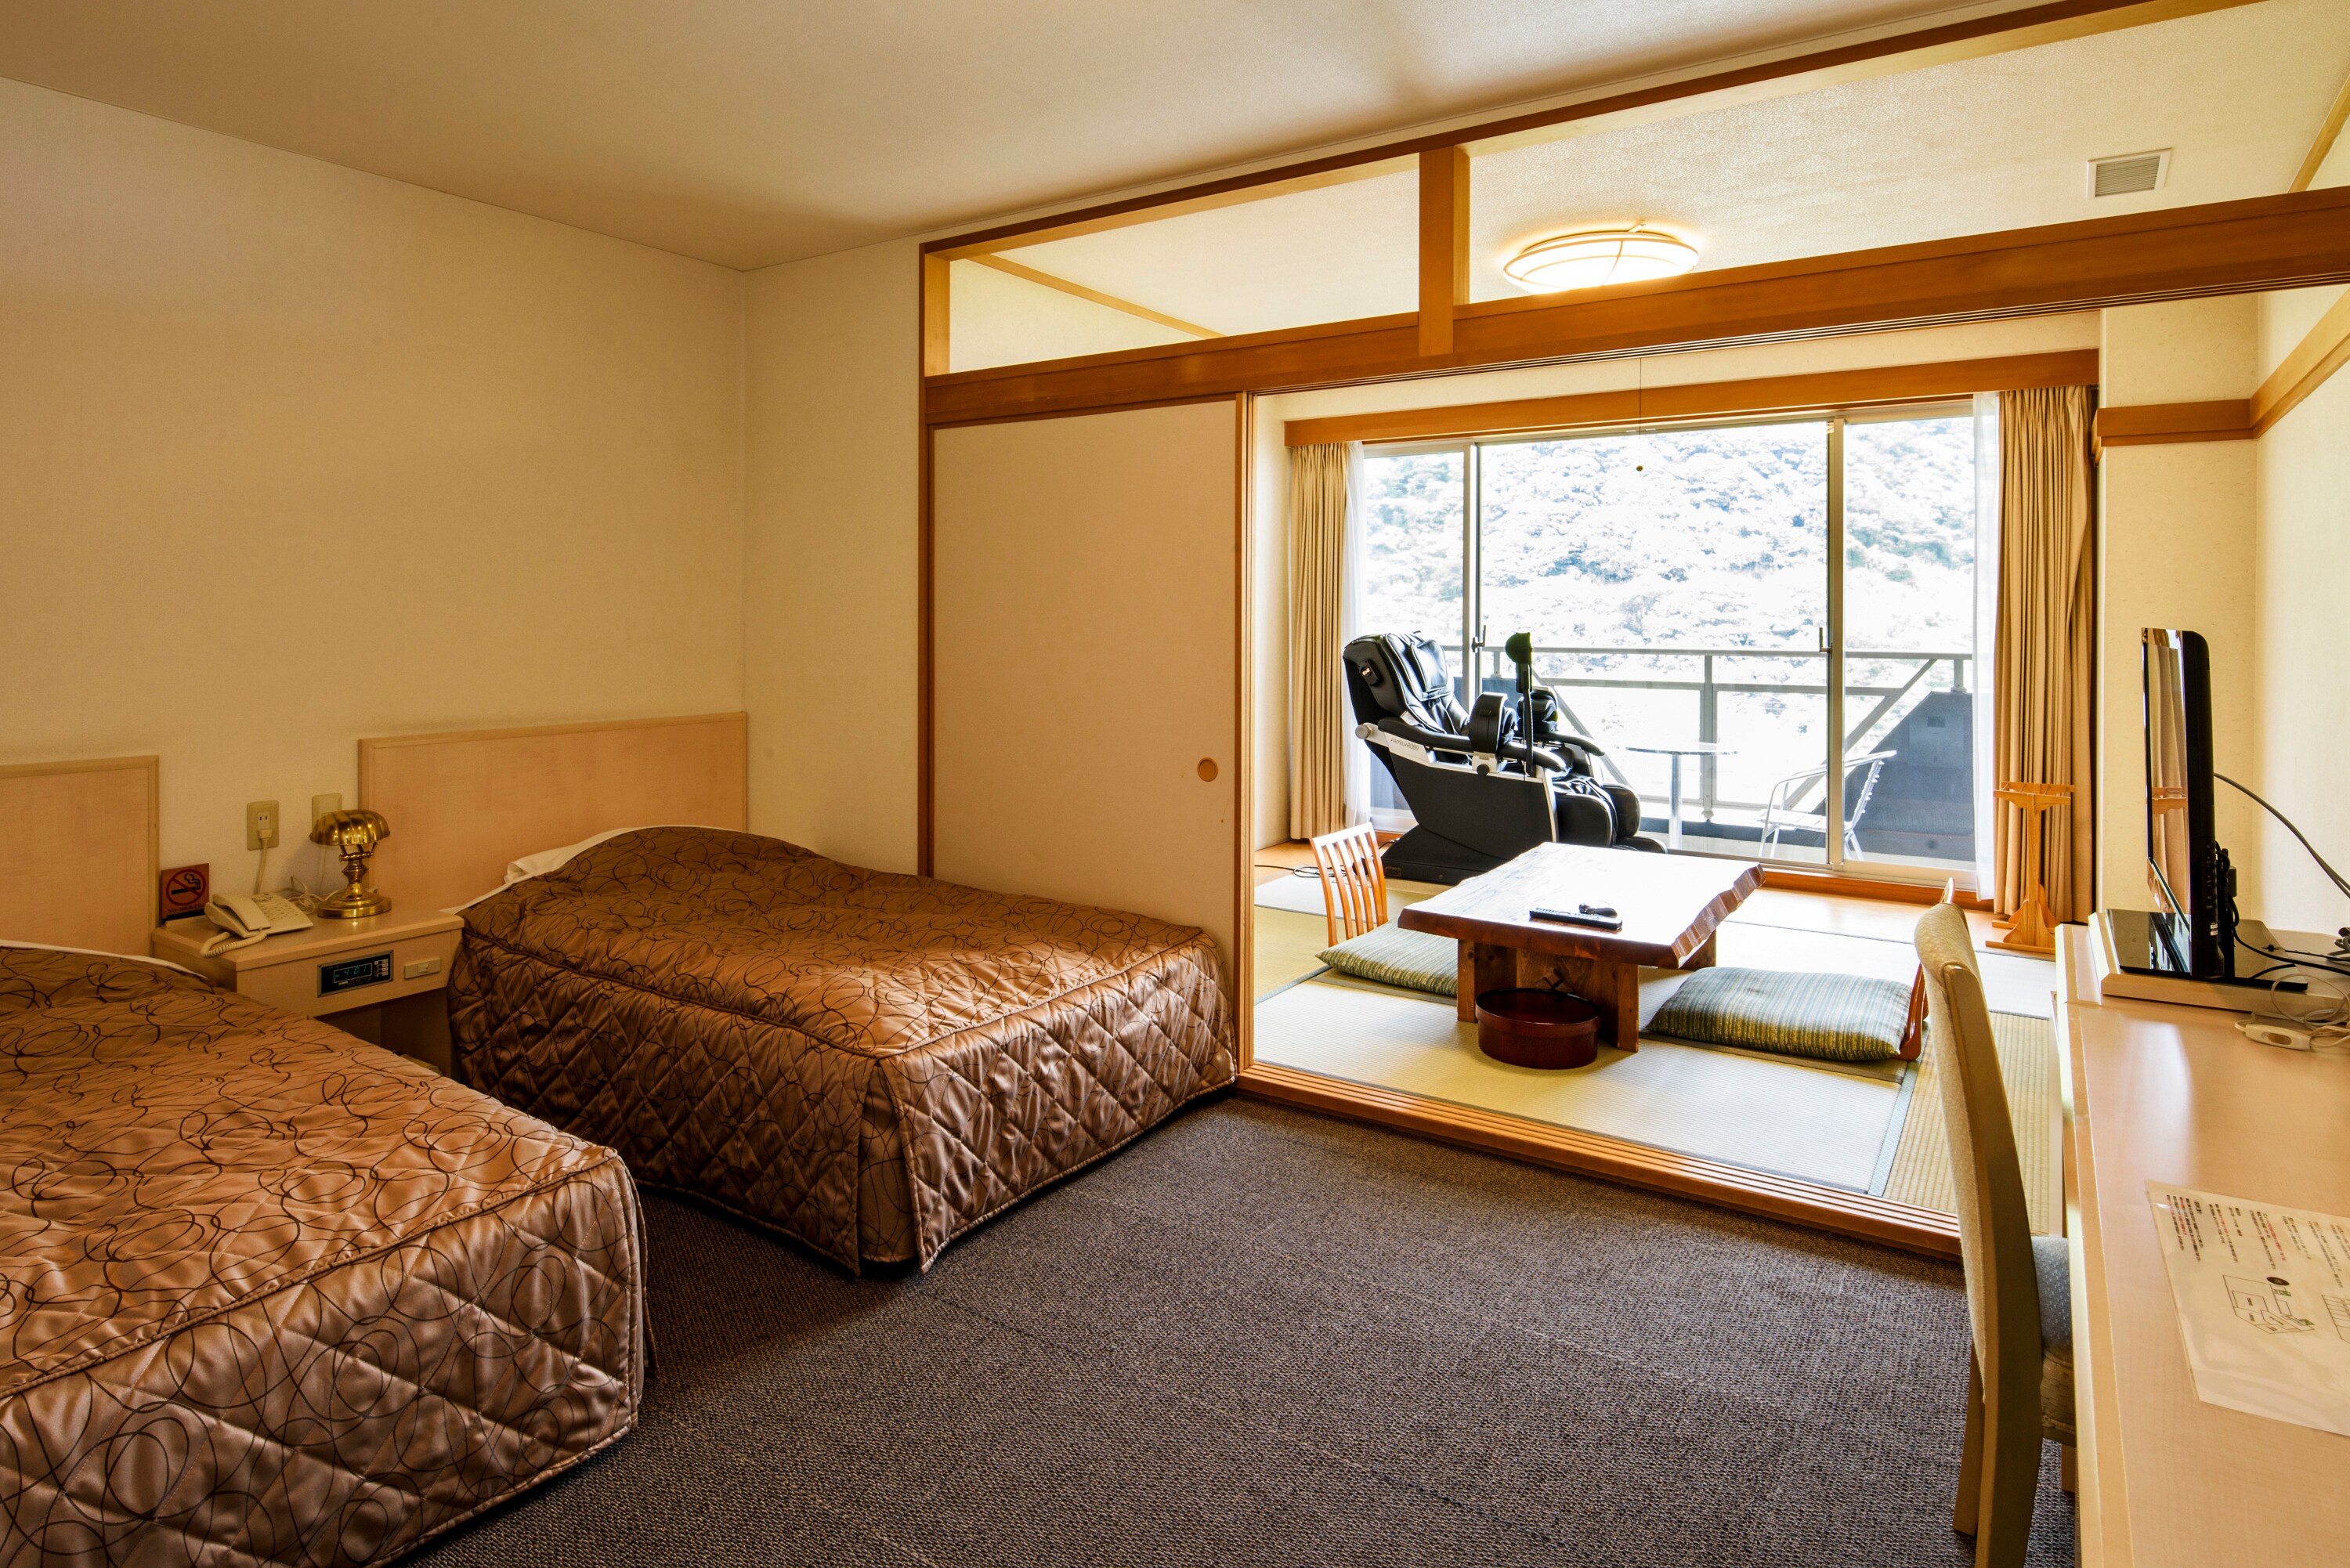 日式和西式房間